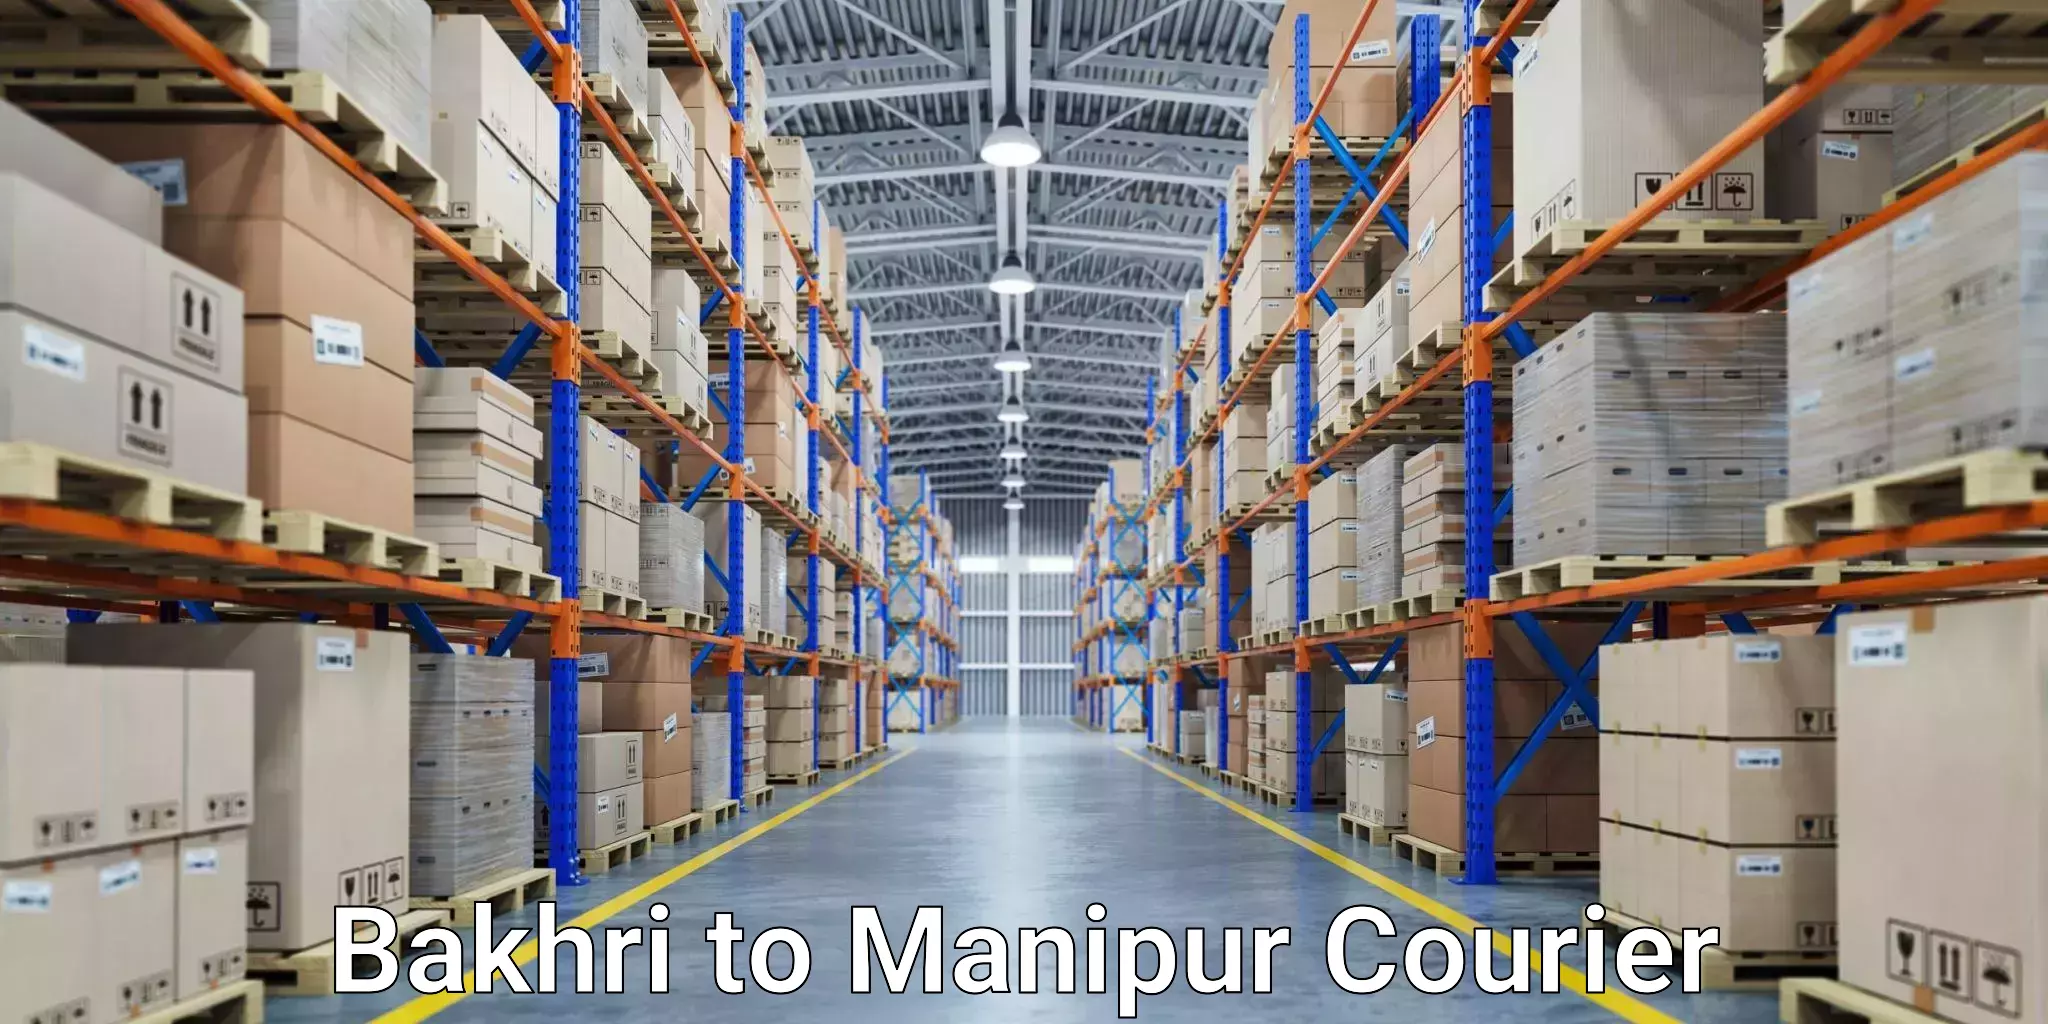 Courier service comparison Bakhri to Kanti